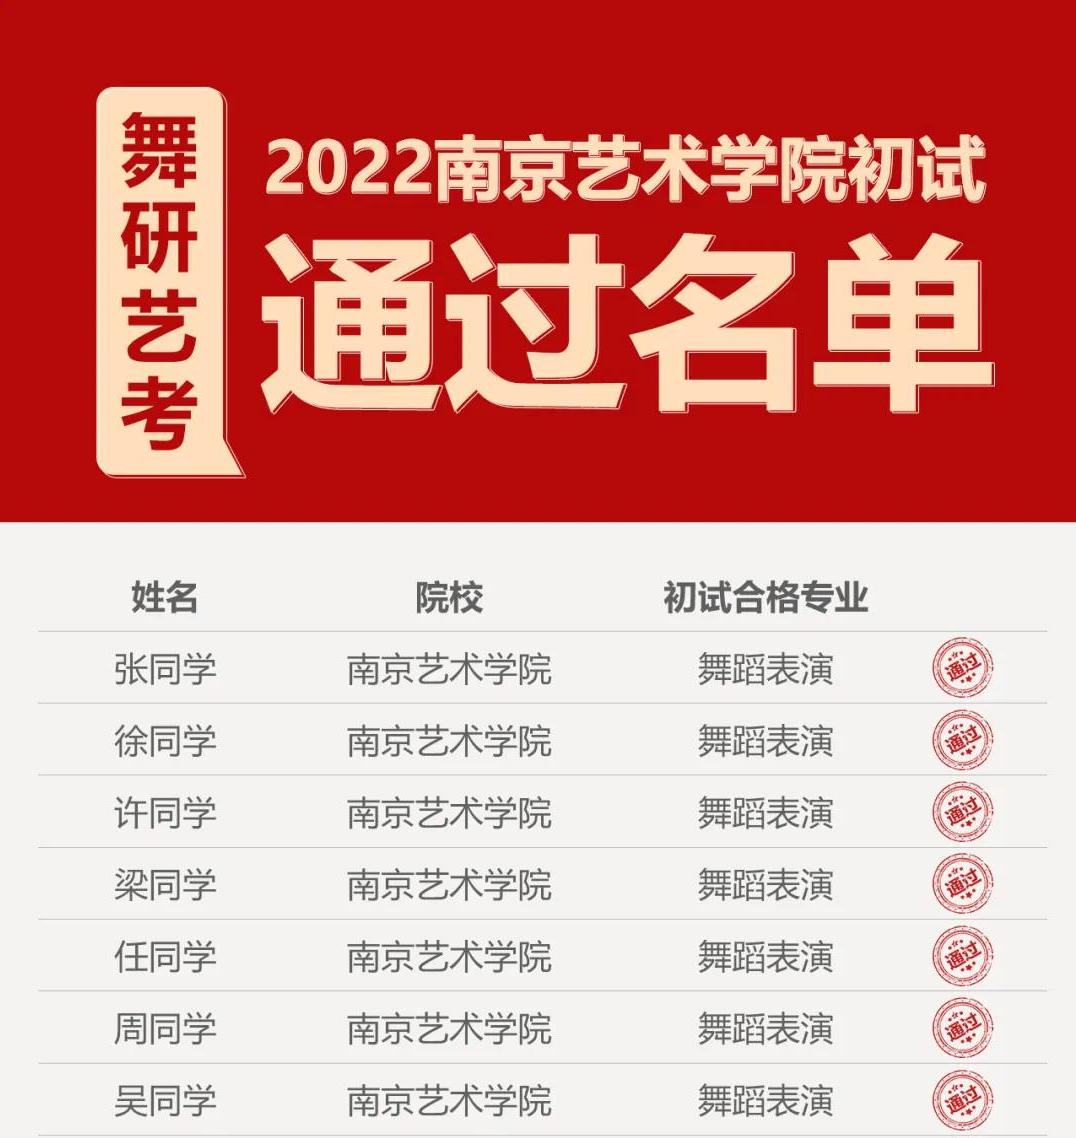 2022南艺校考捷报！舞研120+人次通过南京艺术学院初试，震撼霸屏！再创佳绩！